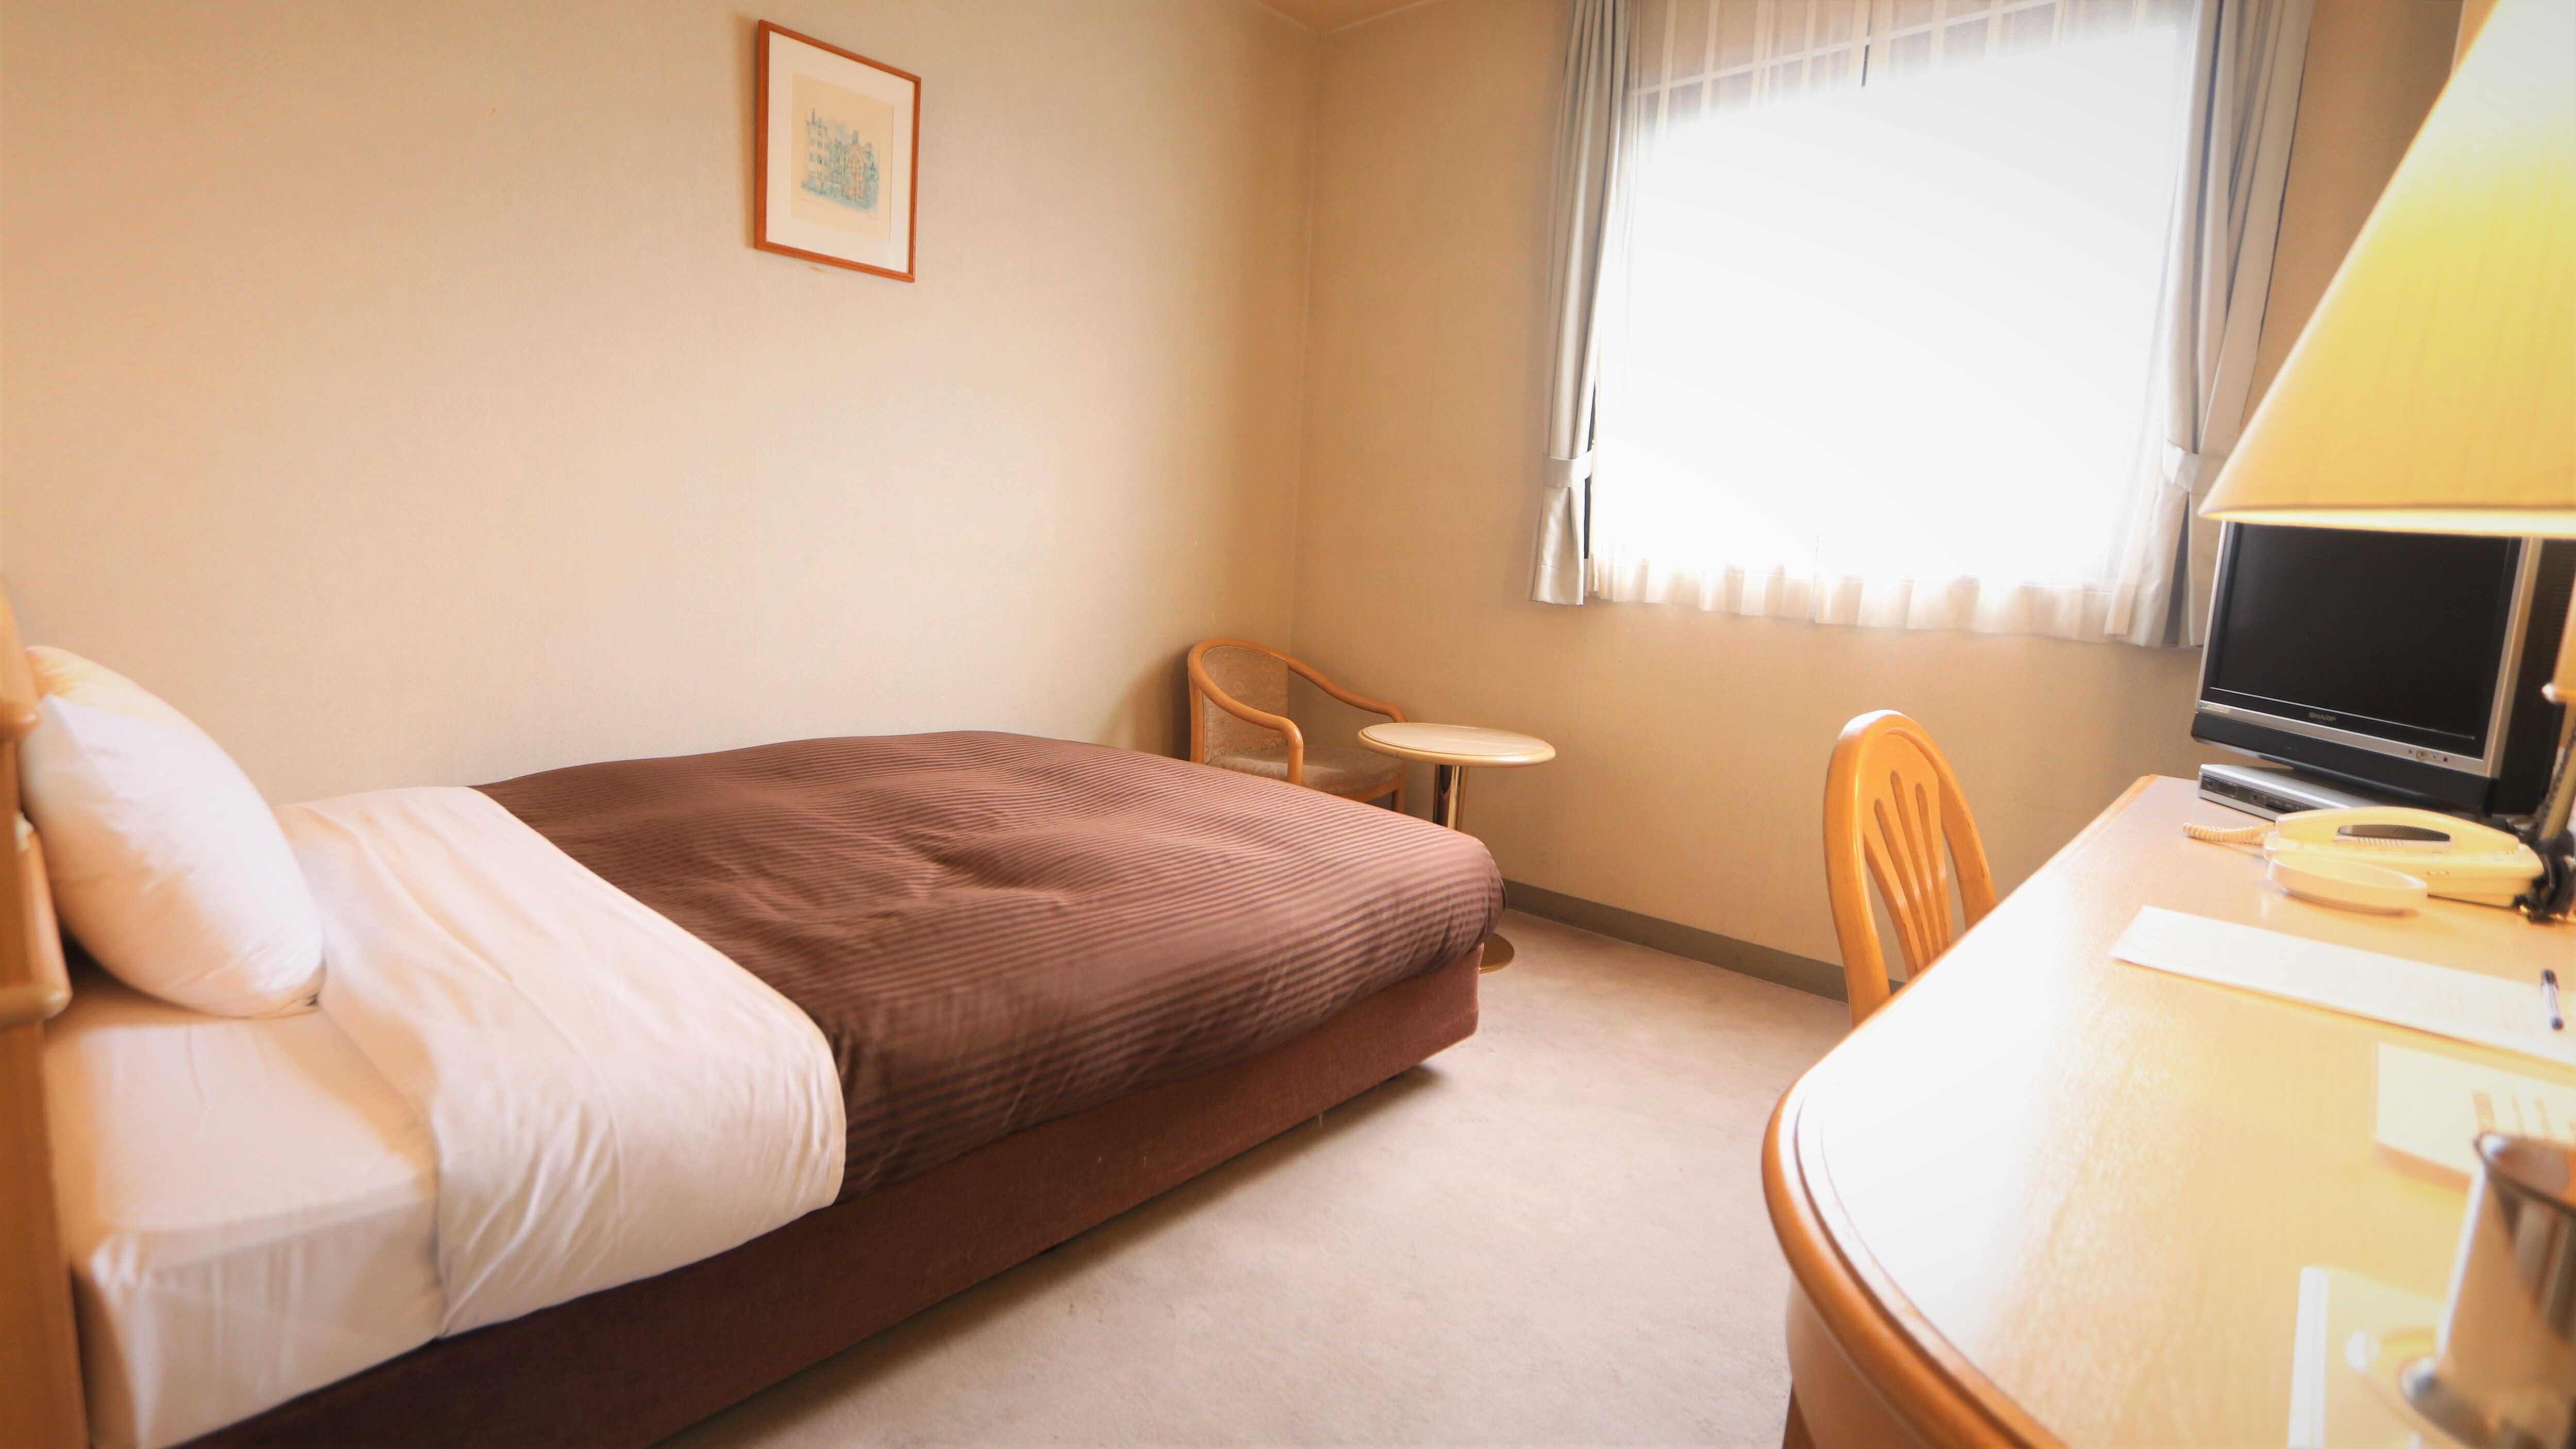 싱글 룸 　　　　　　 침대 크기 135㎝ 방의 넓이는 18㎡ 가습 공기 청정기